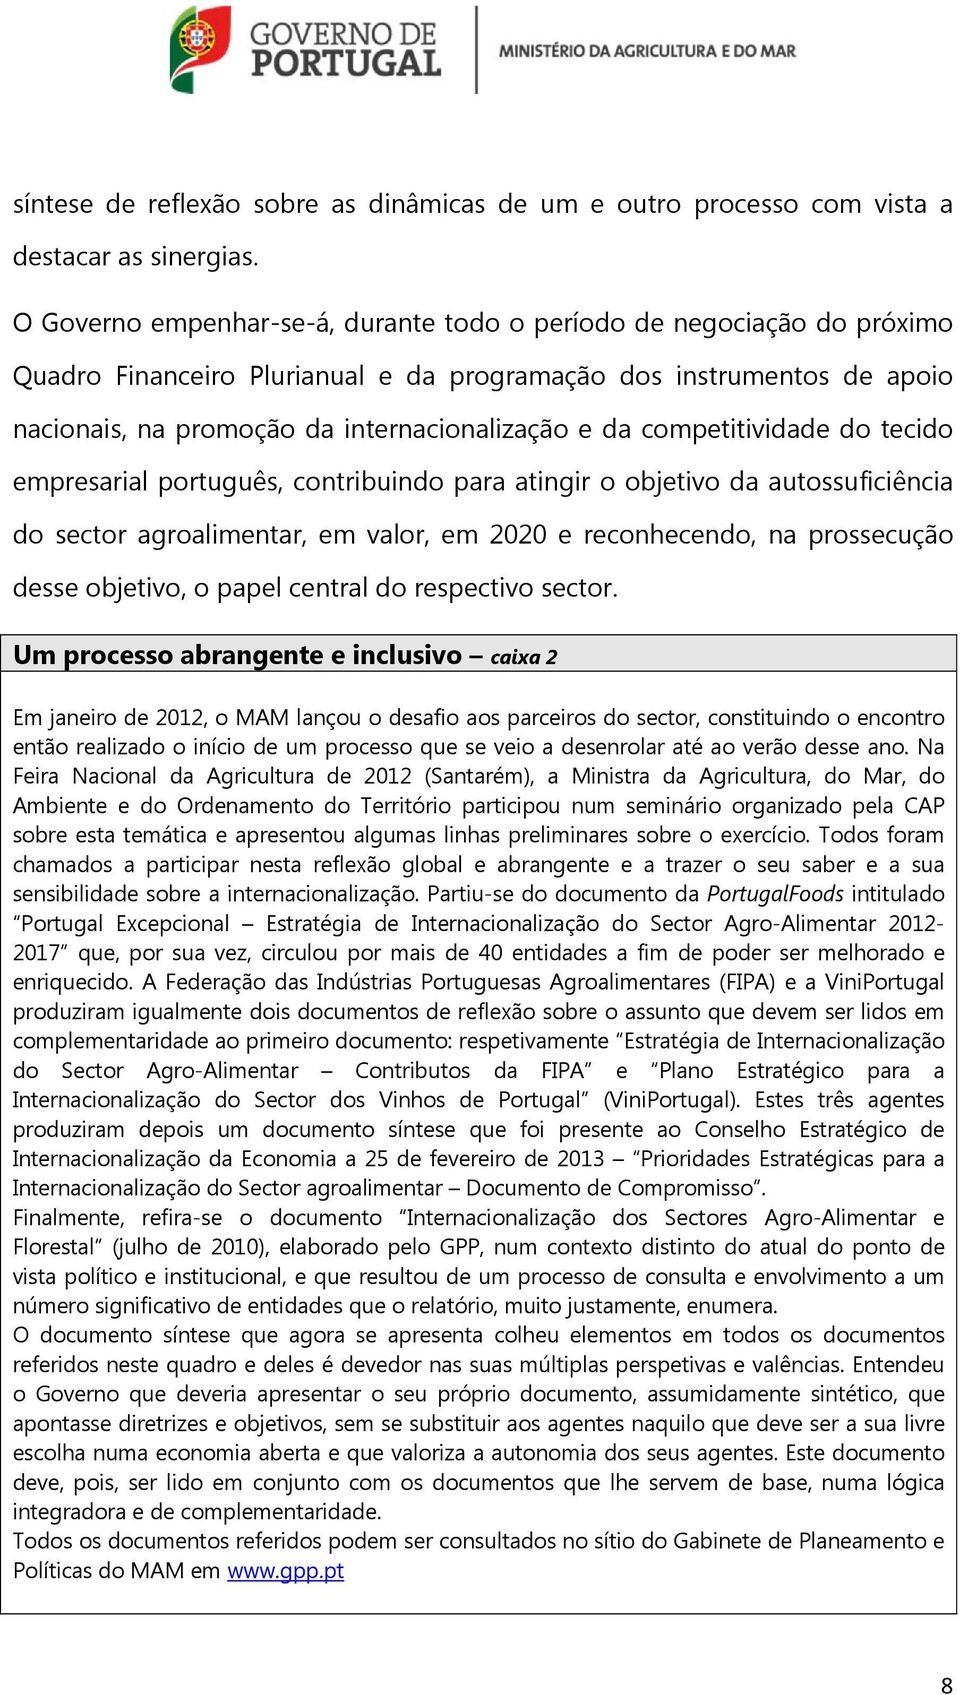 competitividade do tecido empresarial português, contribuindo para atingir o objetivo da autossuficiência do sector agroalimentar, em valor, em 2020 e reconhecendo, na prossecução desse objetivo, o